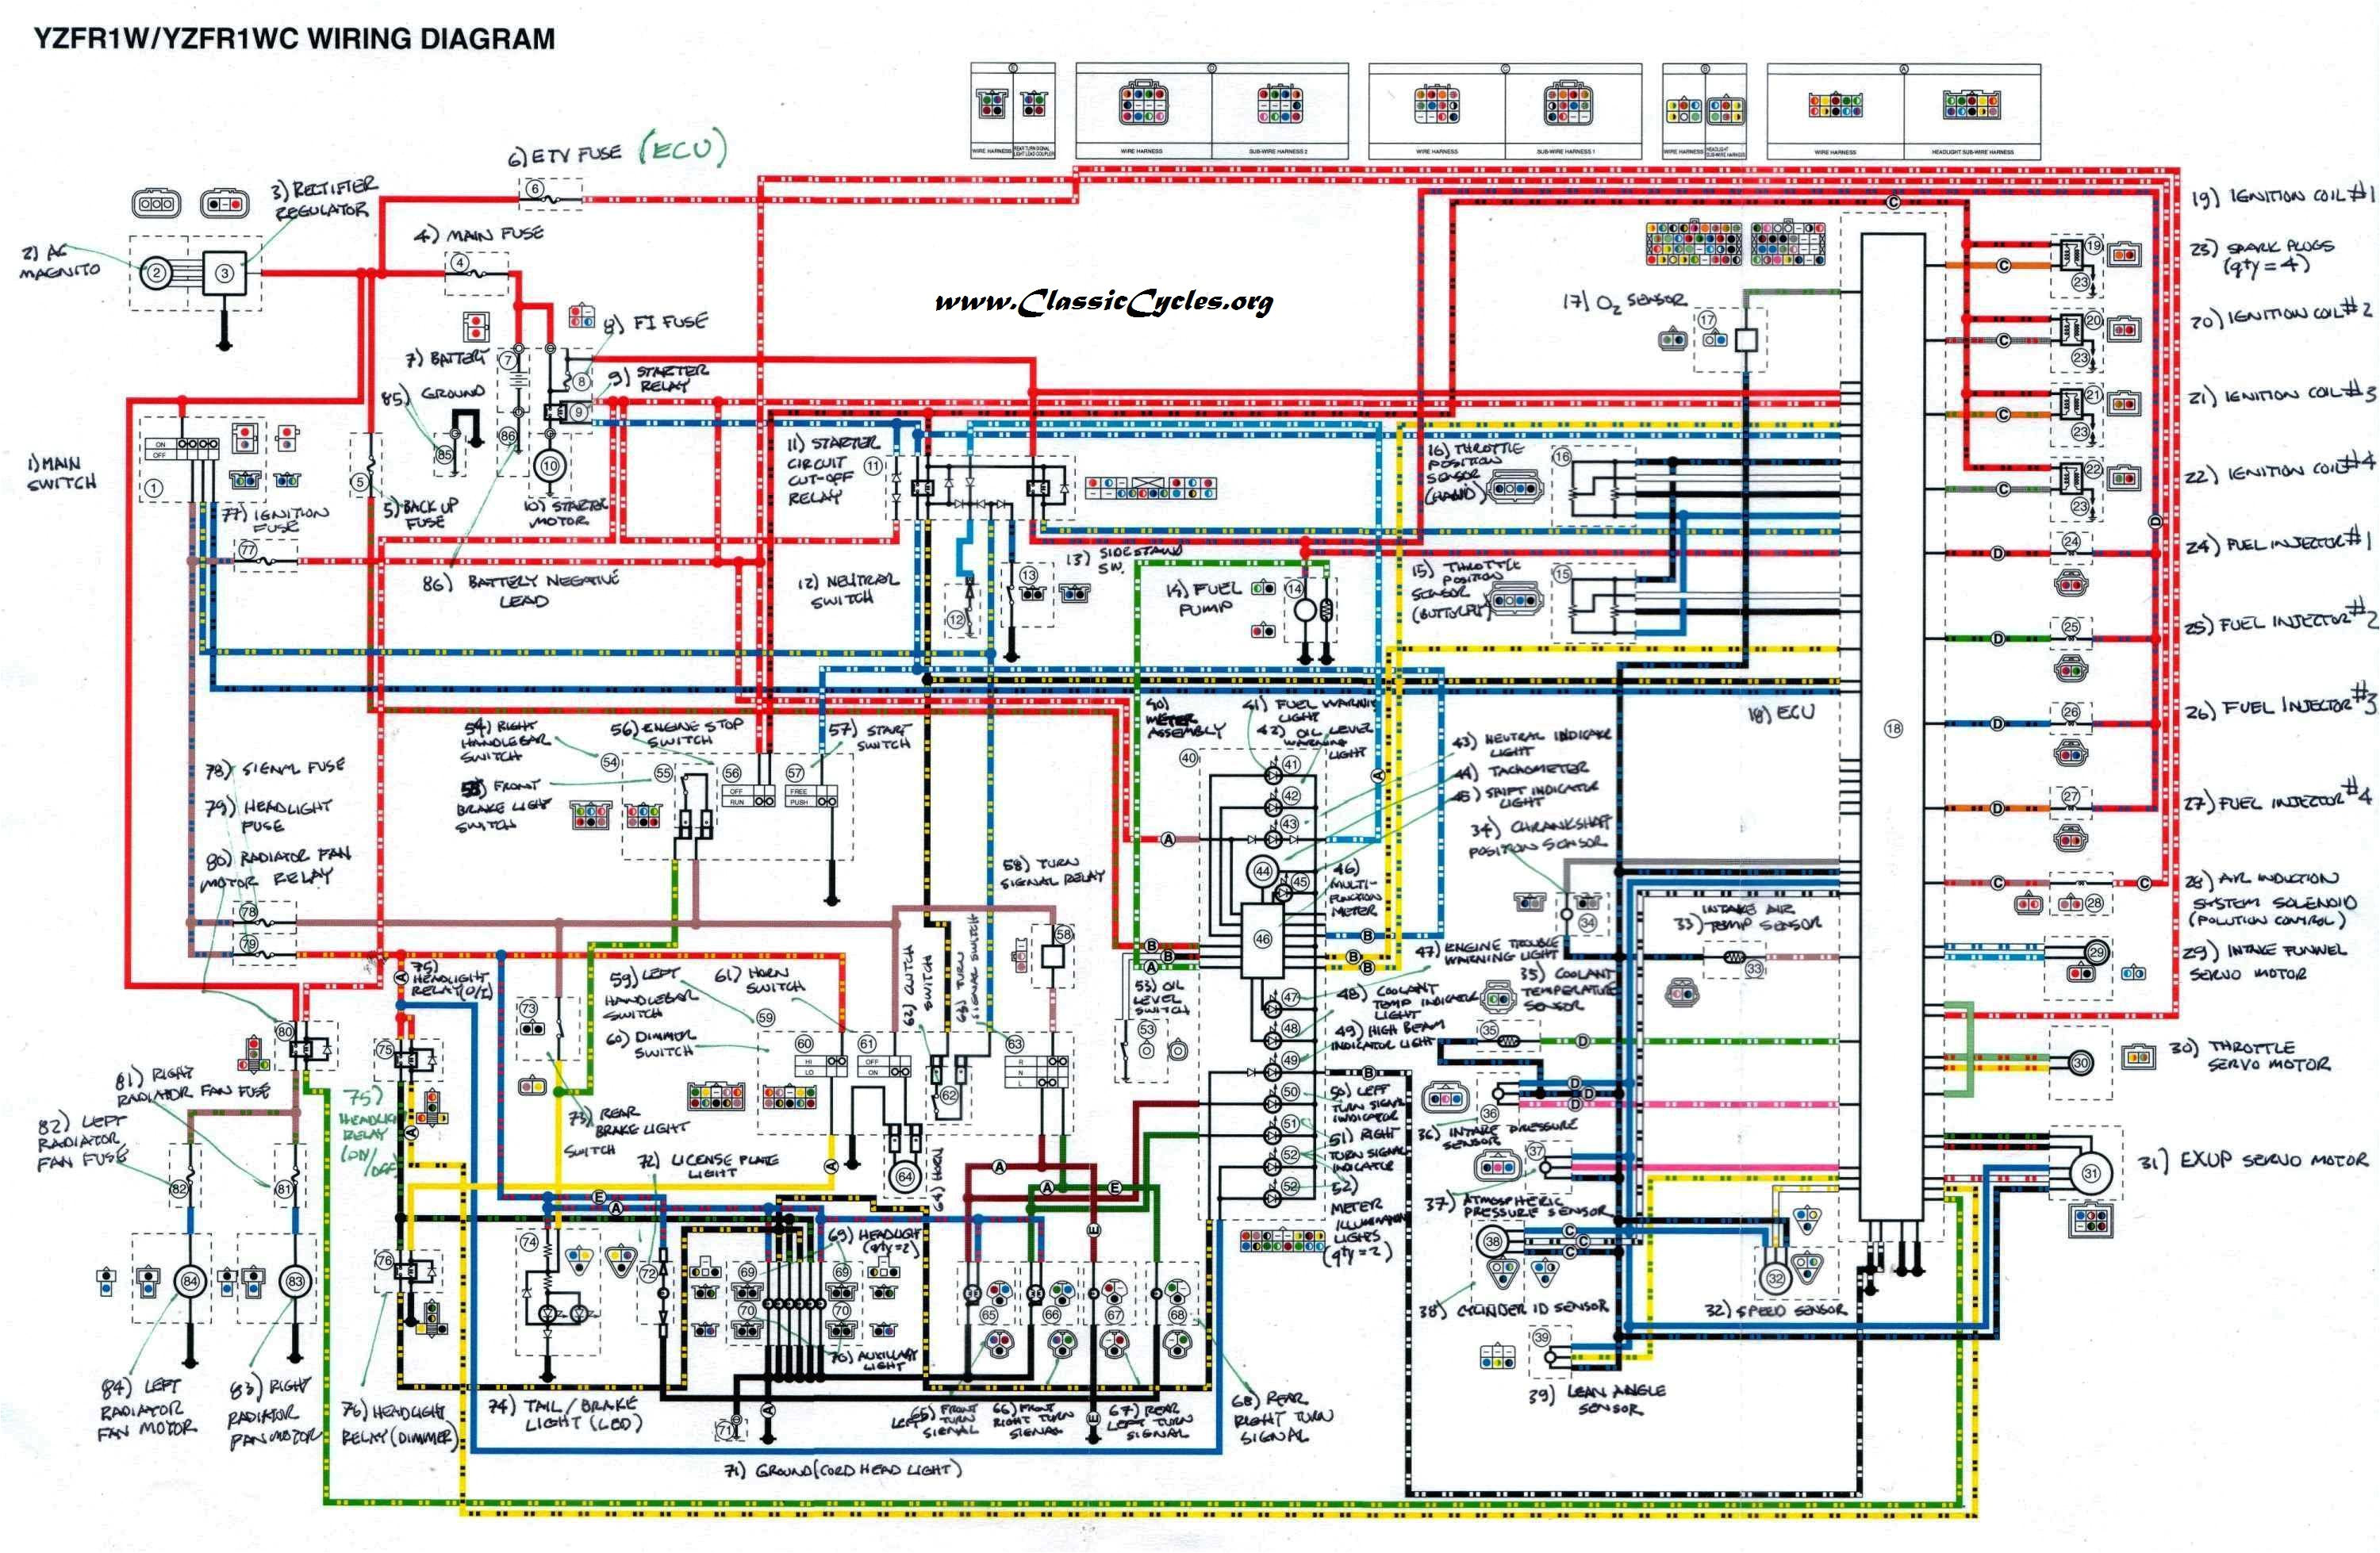 yamaha r1 wiring diagram 2003 wiring diagram reviewyzf r1 wire diagram new wiring diagram yamaha r1